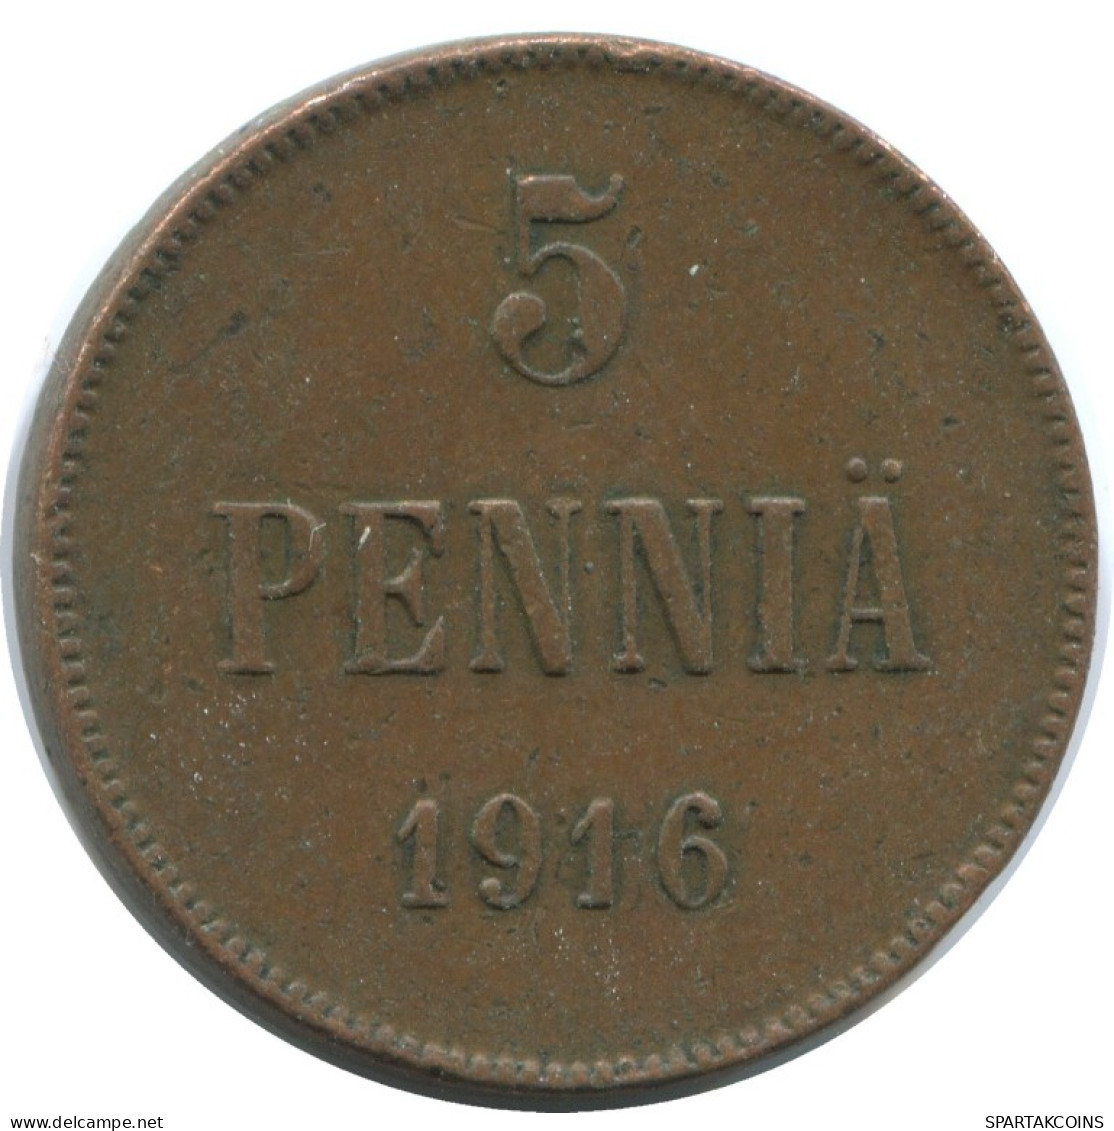 5 PENNIA 1916 FINLANDIA FINLAND Moneda RUSIA RUSSIA EMPIRE #AB167.5.E.A - Finnland